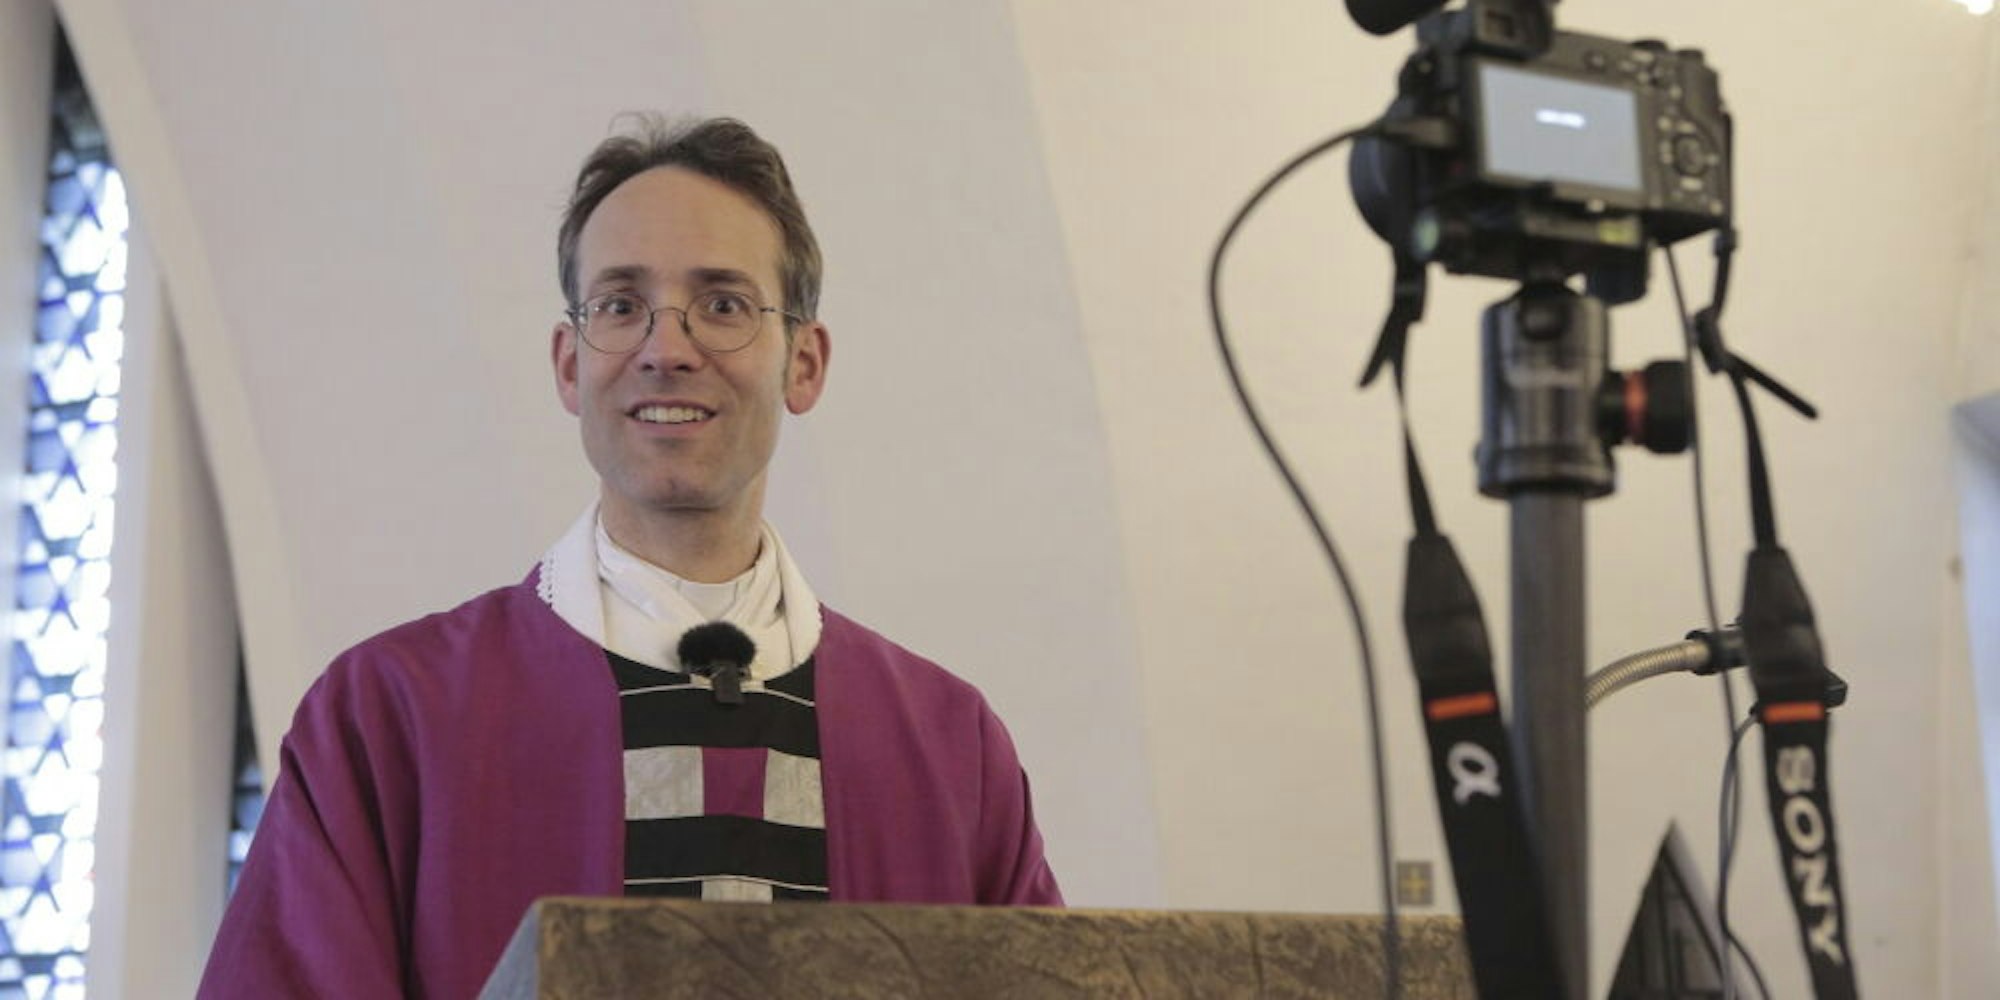 Pfarrer Martin Reimer bei einer Online-Messe.